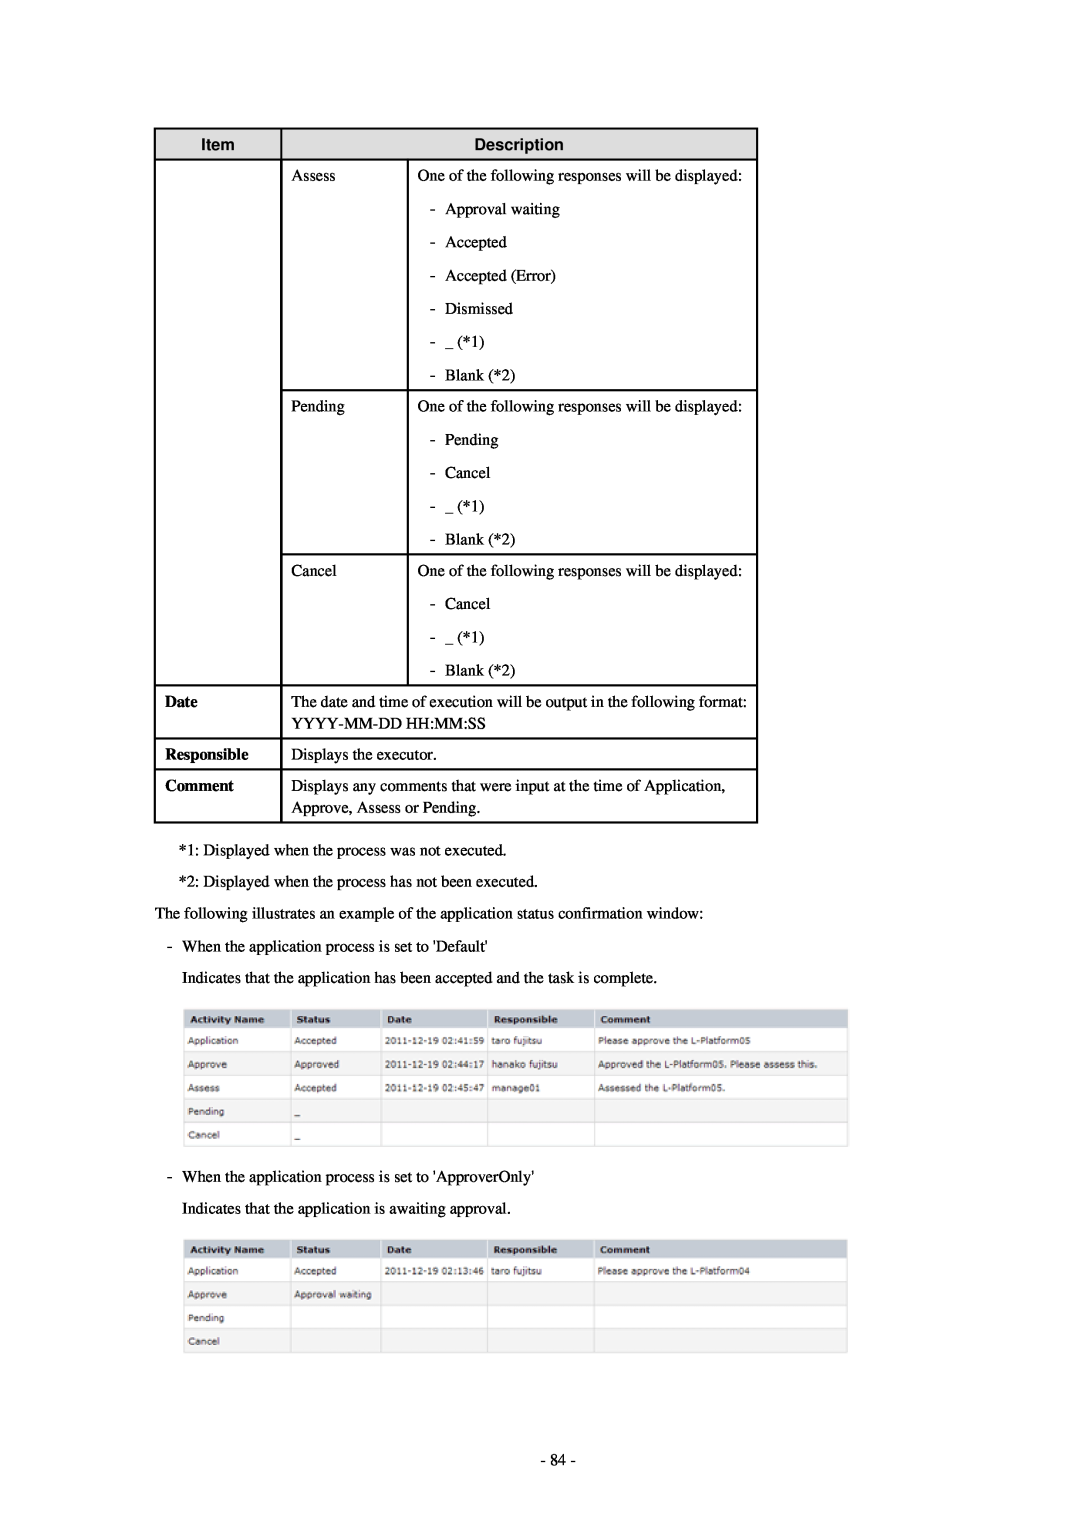 Fujitsu V3.0.0 manual Description, Date, Responsible, Comment 